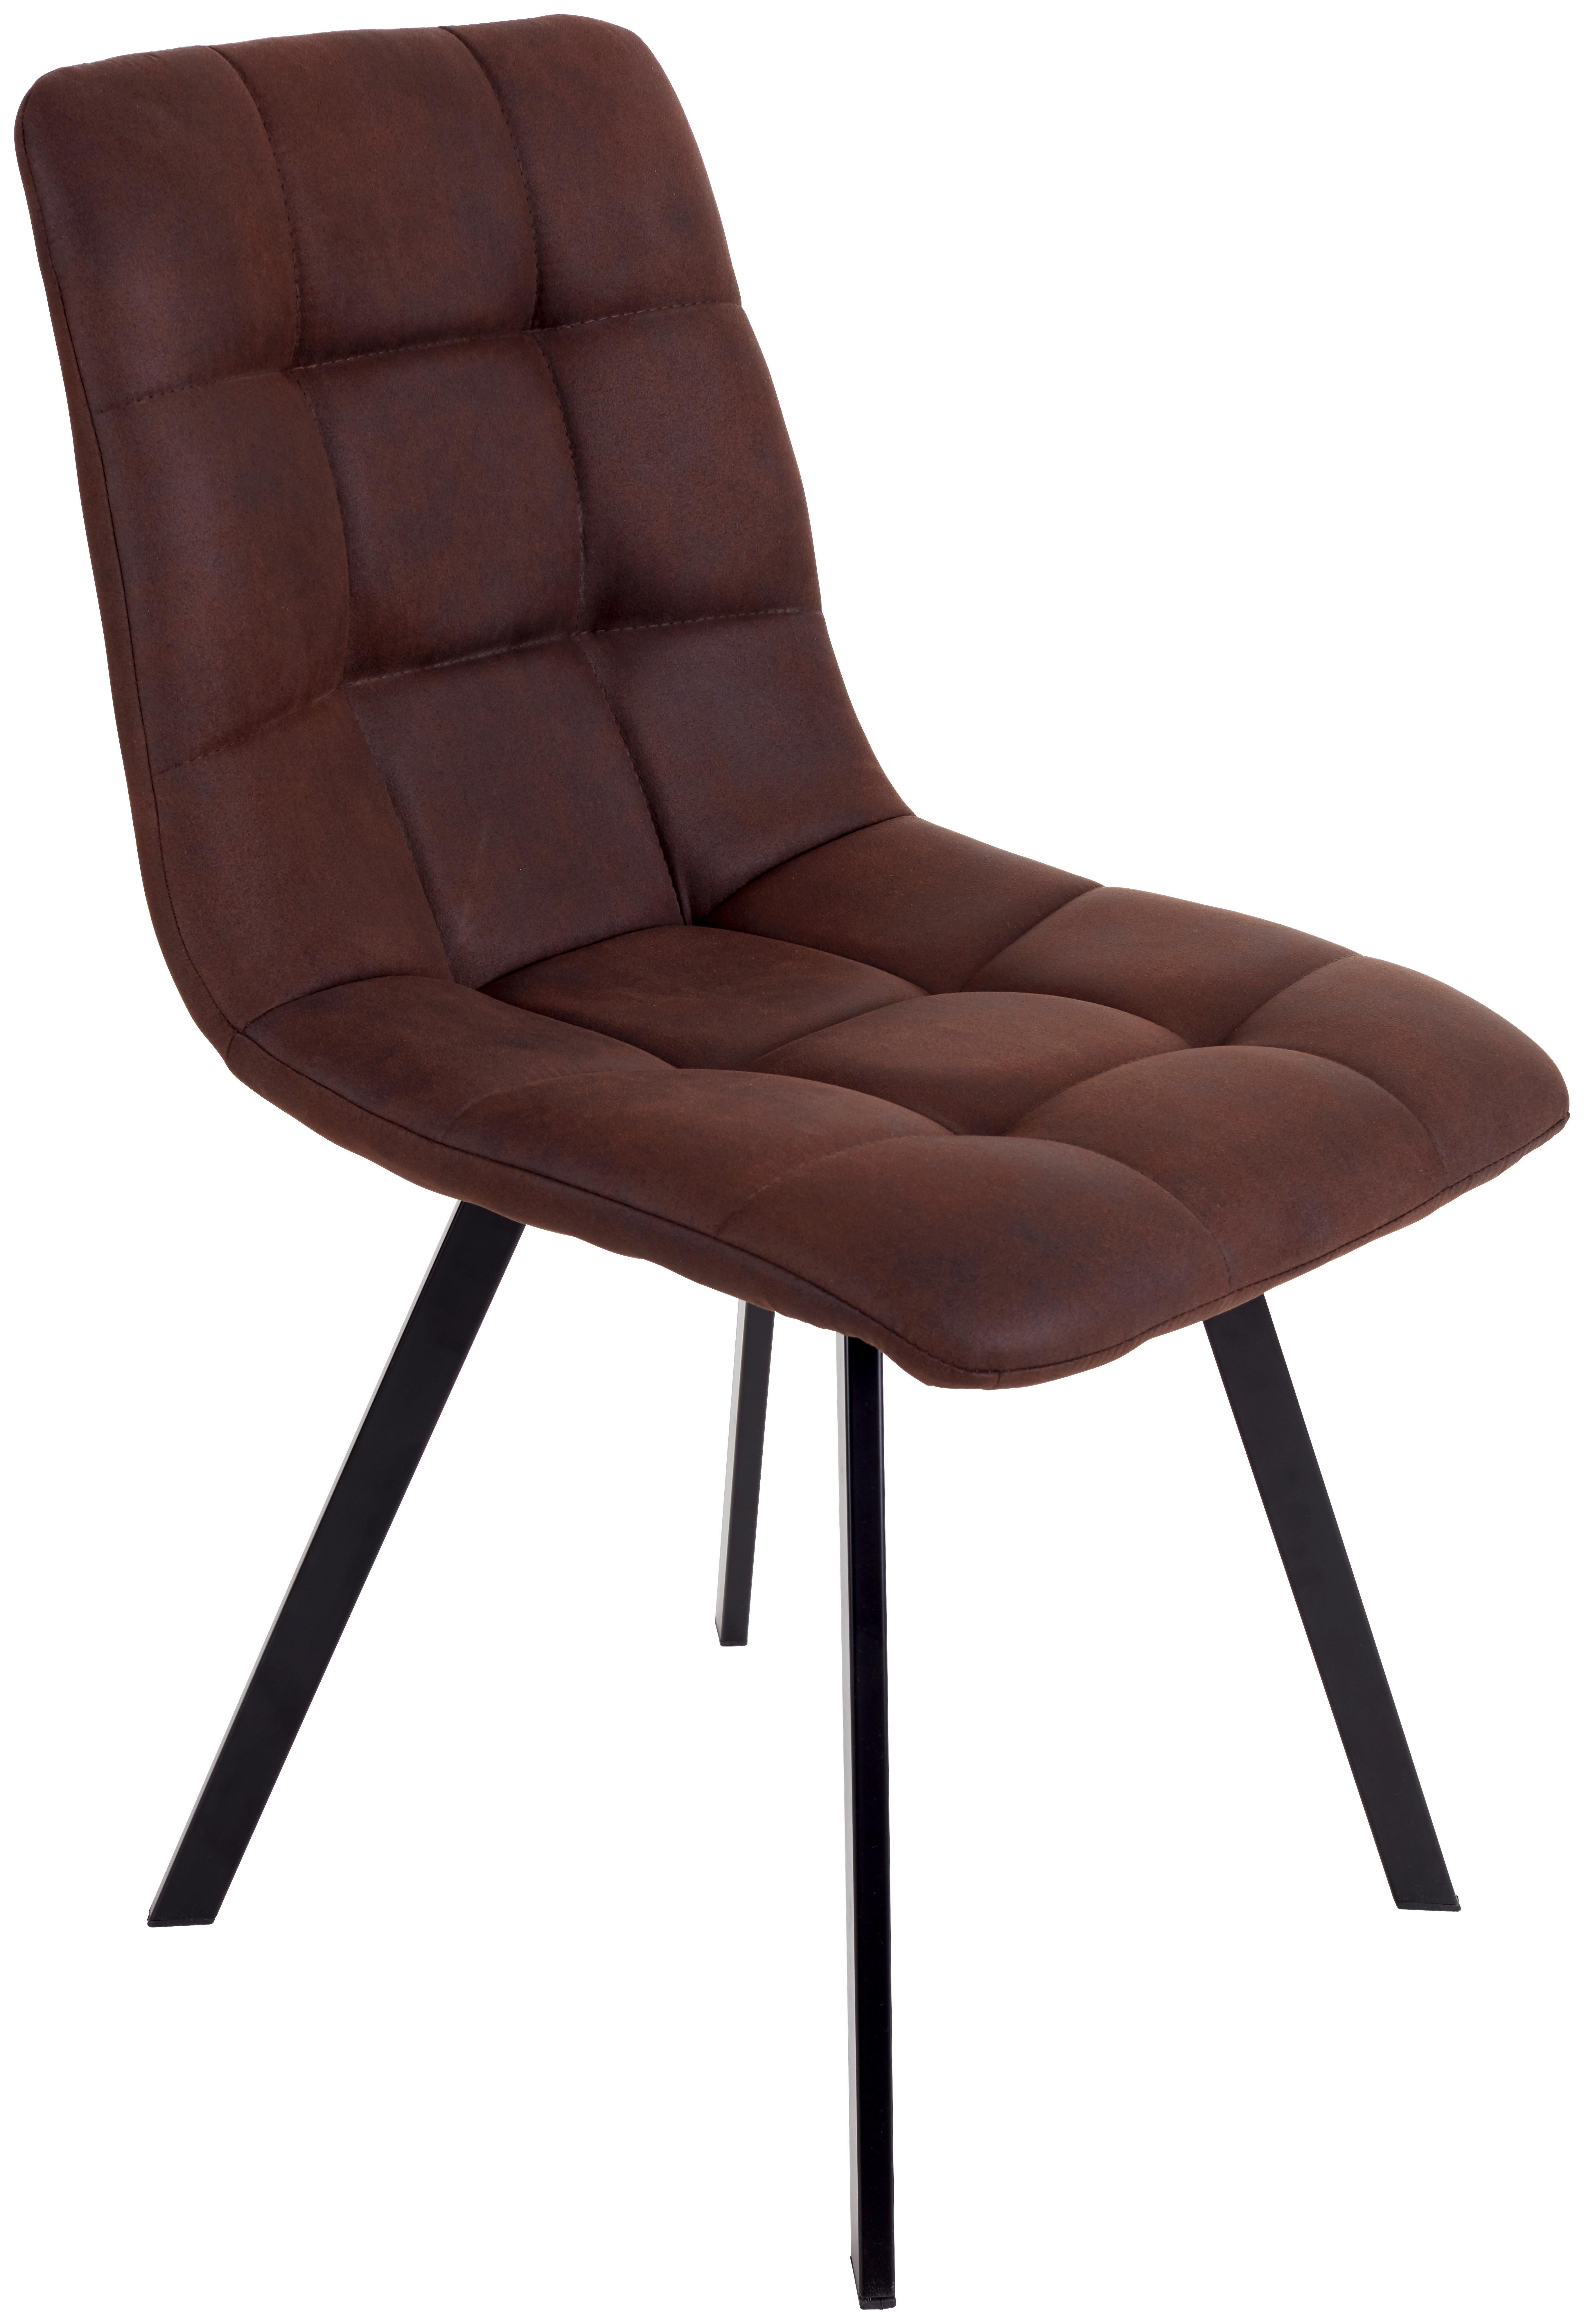 Čtyřnohá Židle Zürs - černá/hnědá, Konvenční, kov/dřevo (45/89/58cm)